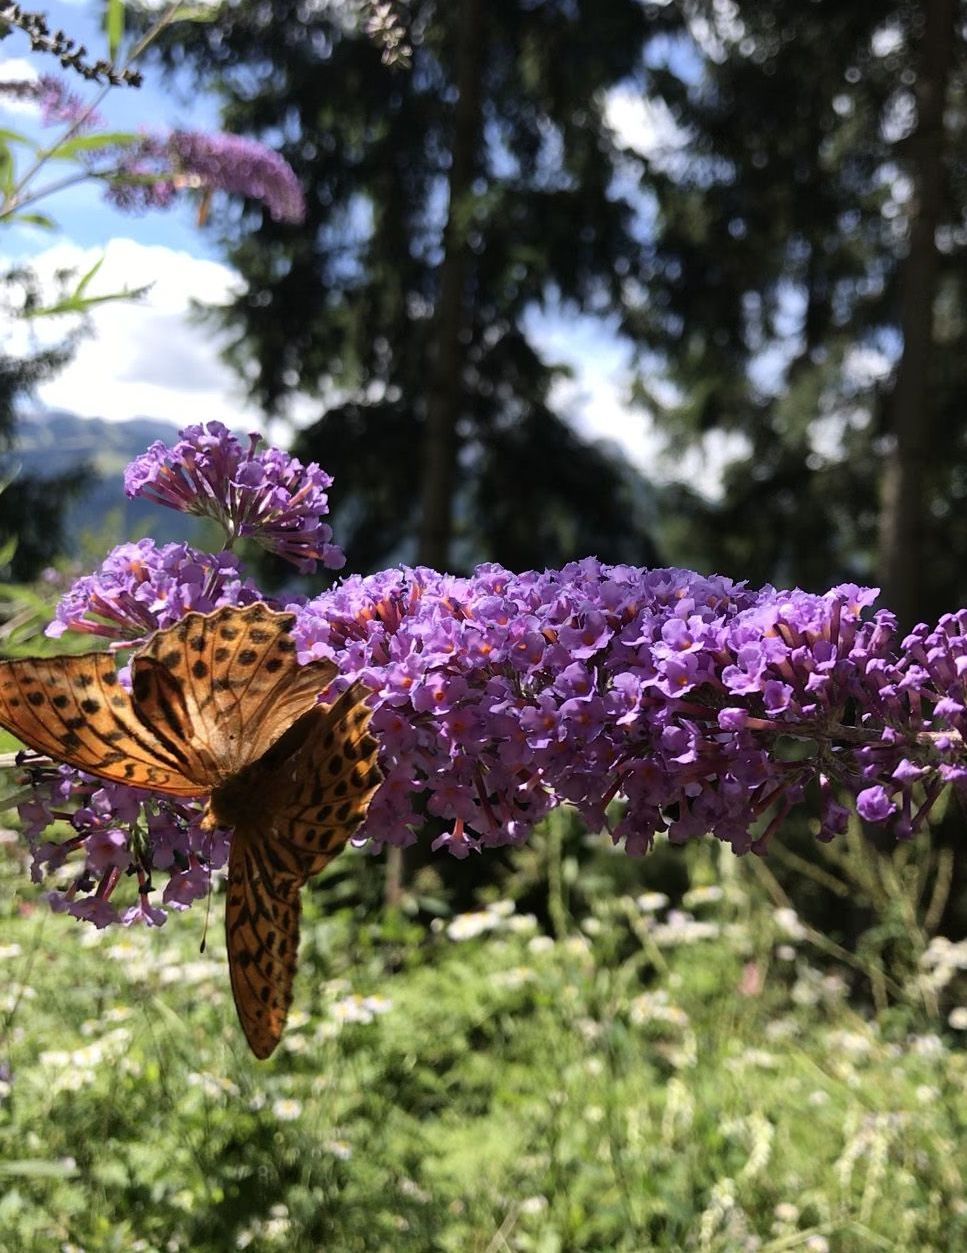 Vlinder op vlinderstruik in het bos